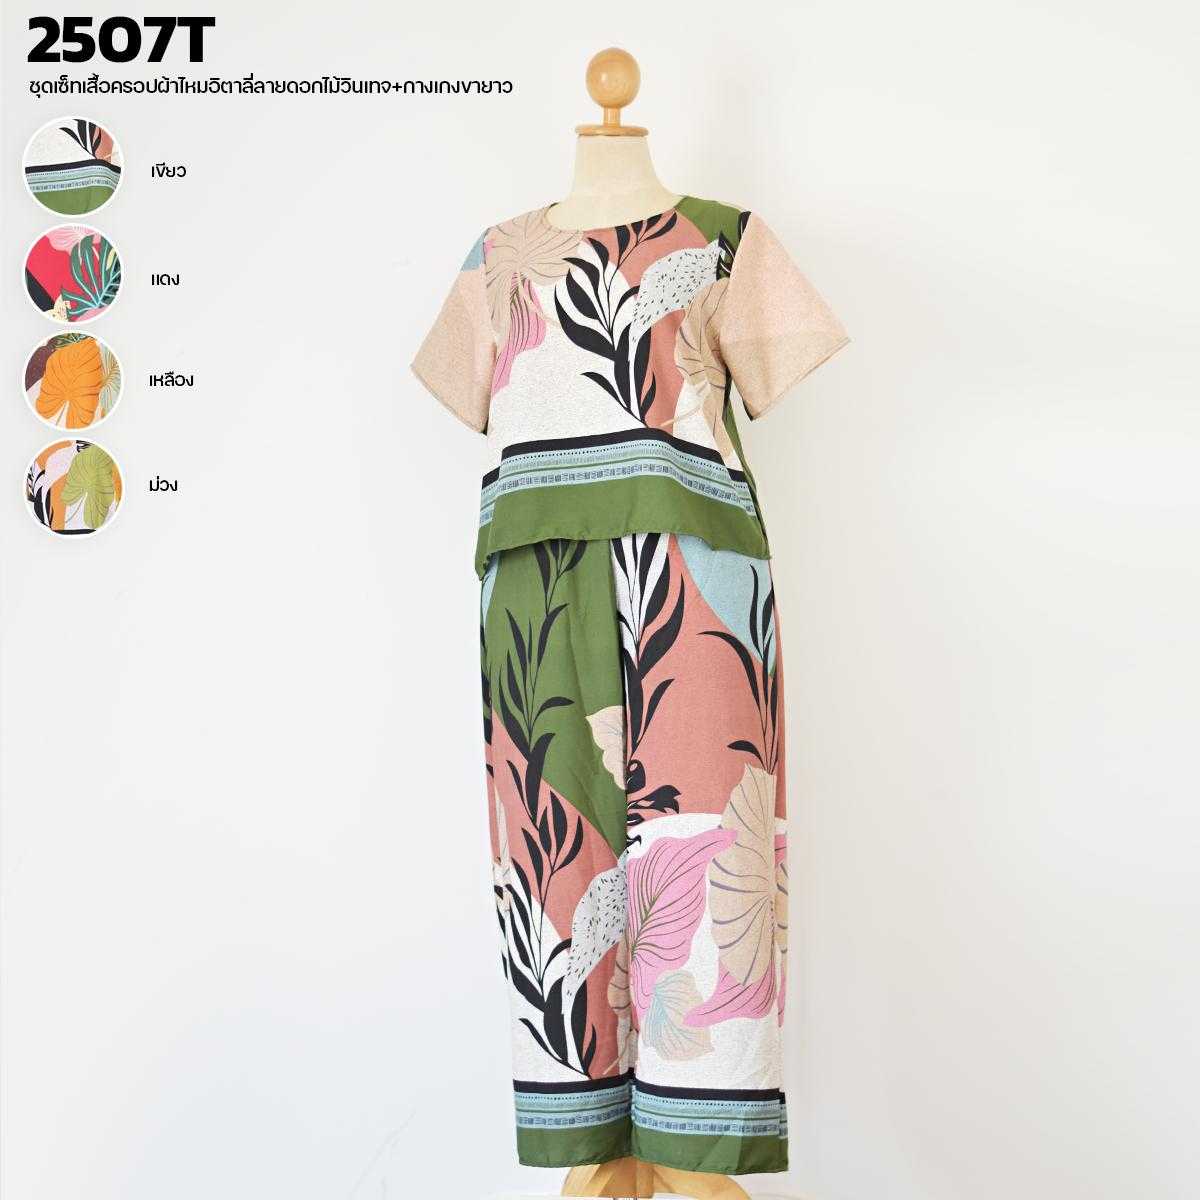 2507T ชุดเซ็ทเสื้อครอปผ้าไหมอิตาลี่ลายดอกไม้วินเทจ+กางเกงขายาว